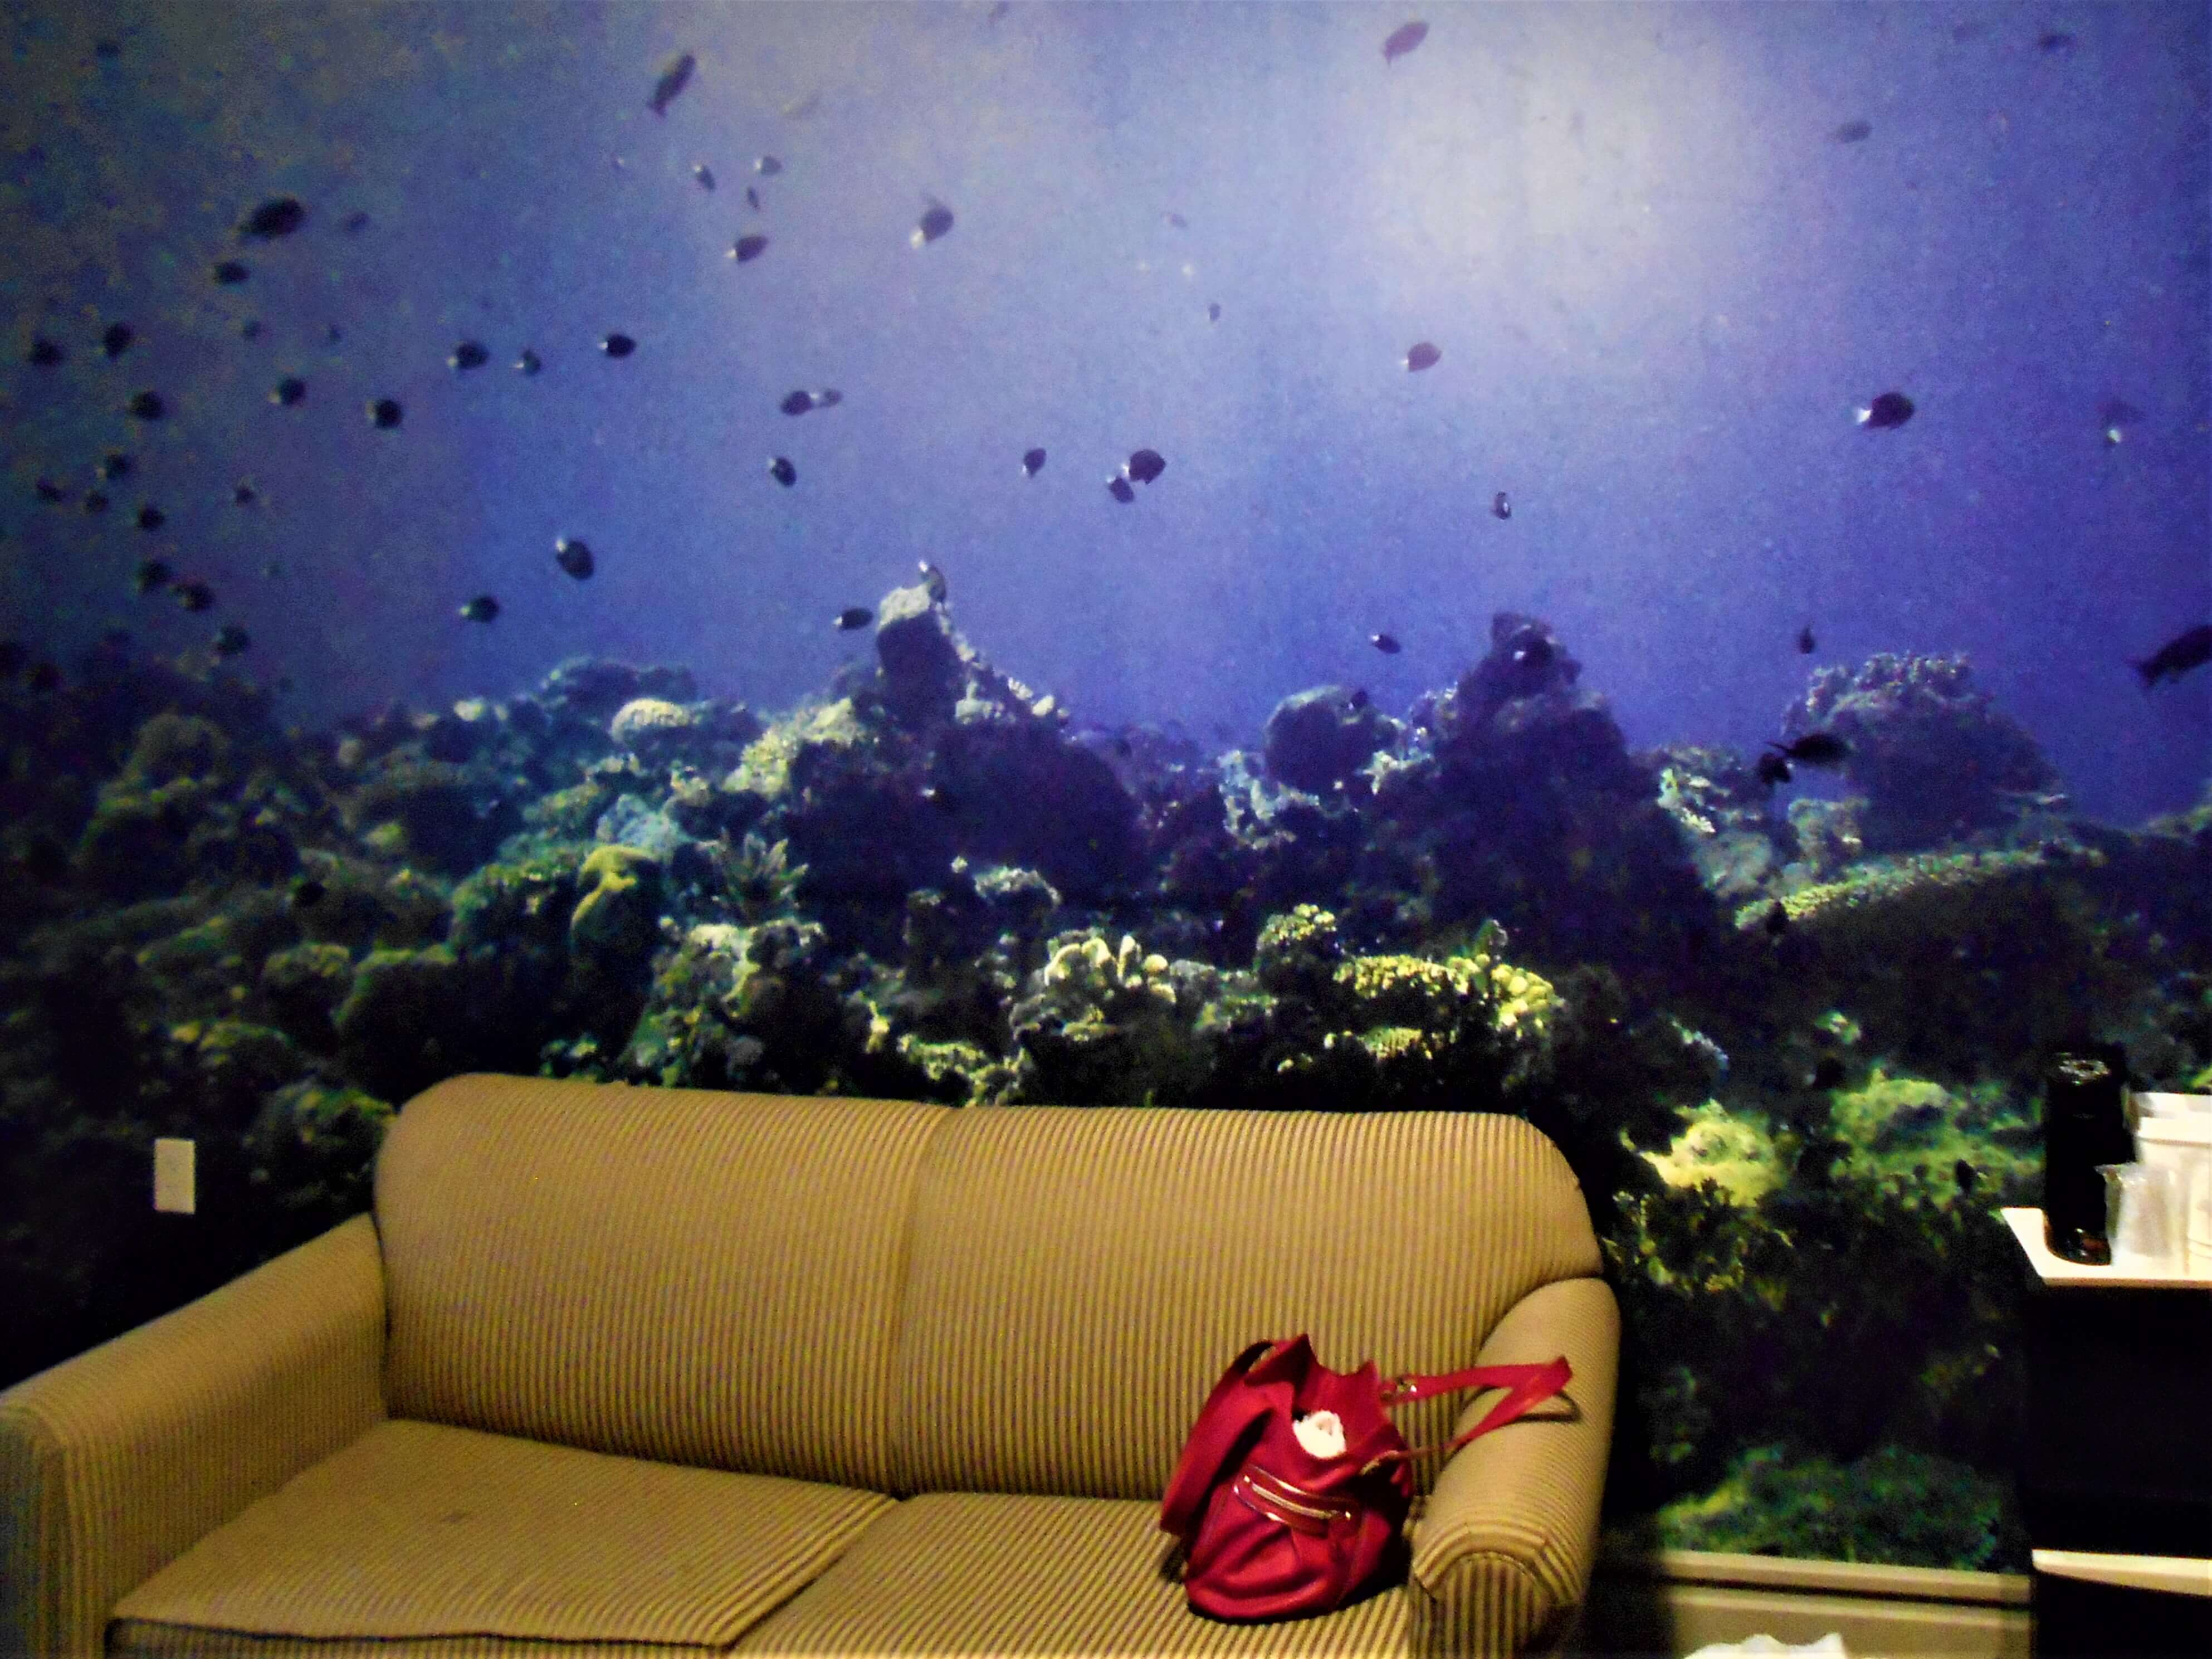 undersea hotel room mural